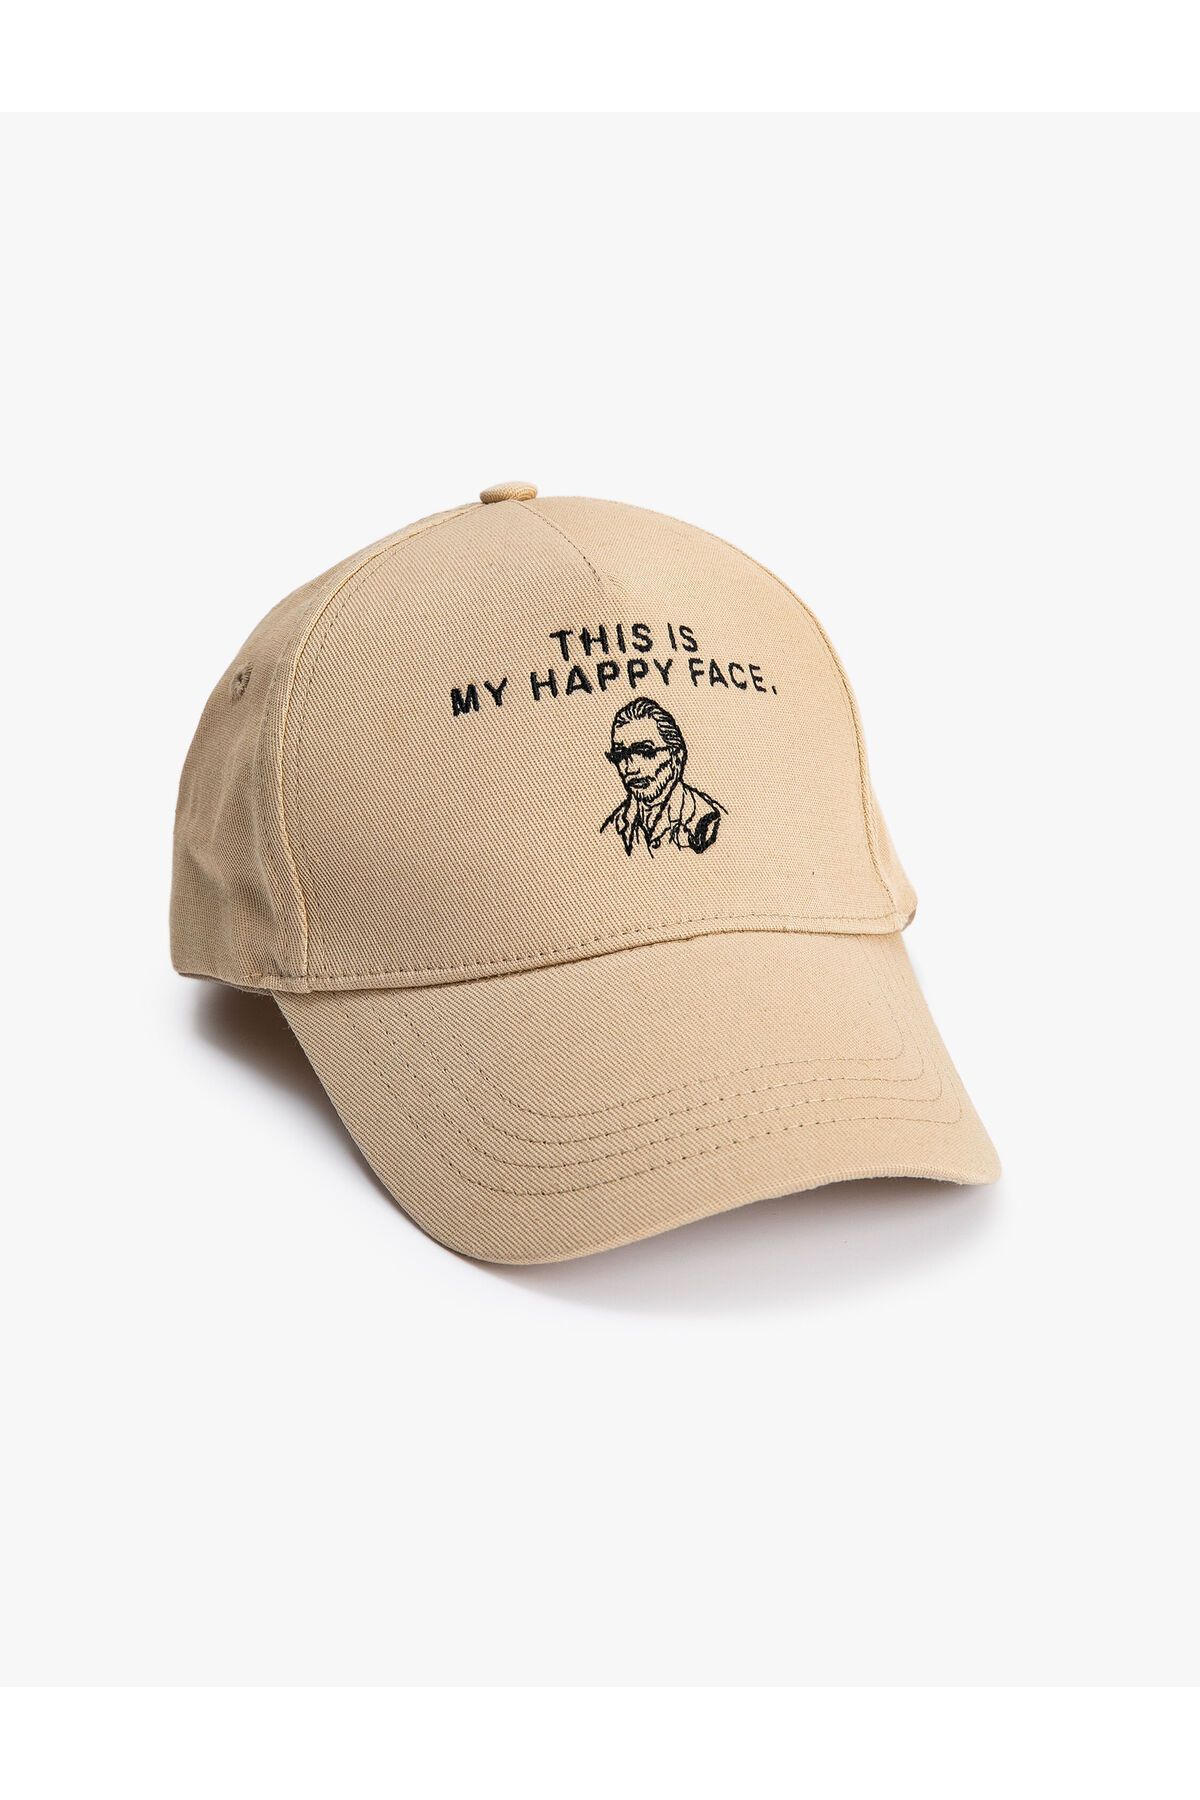 Koton Vincent Van Gogh Kep Şapka Lisanslı Işlemeli